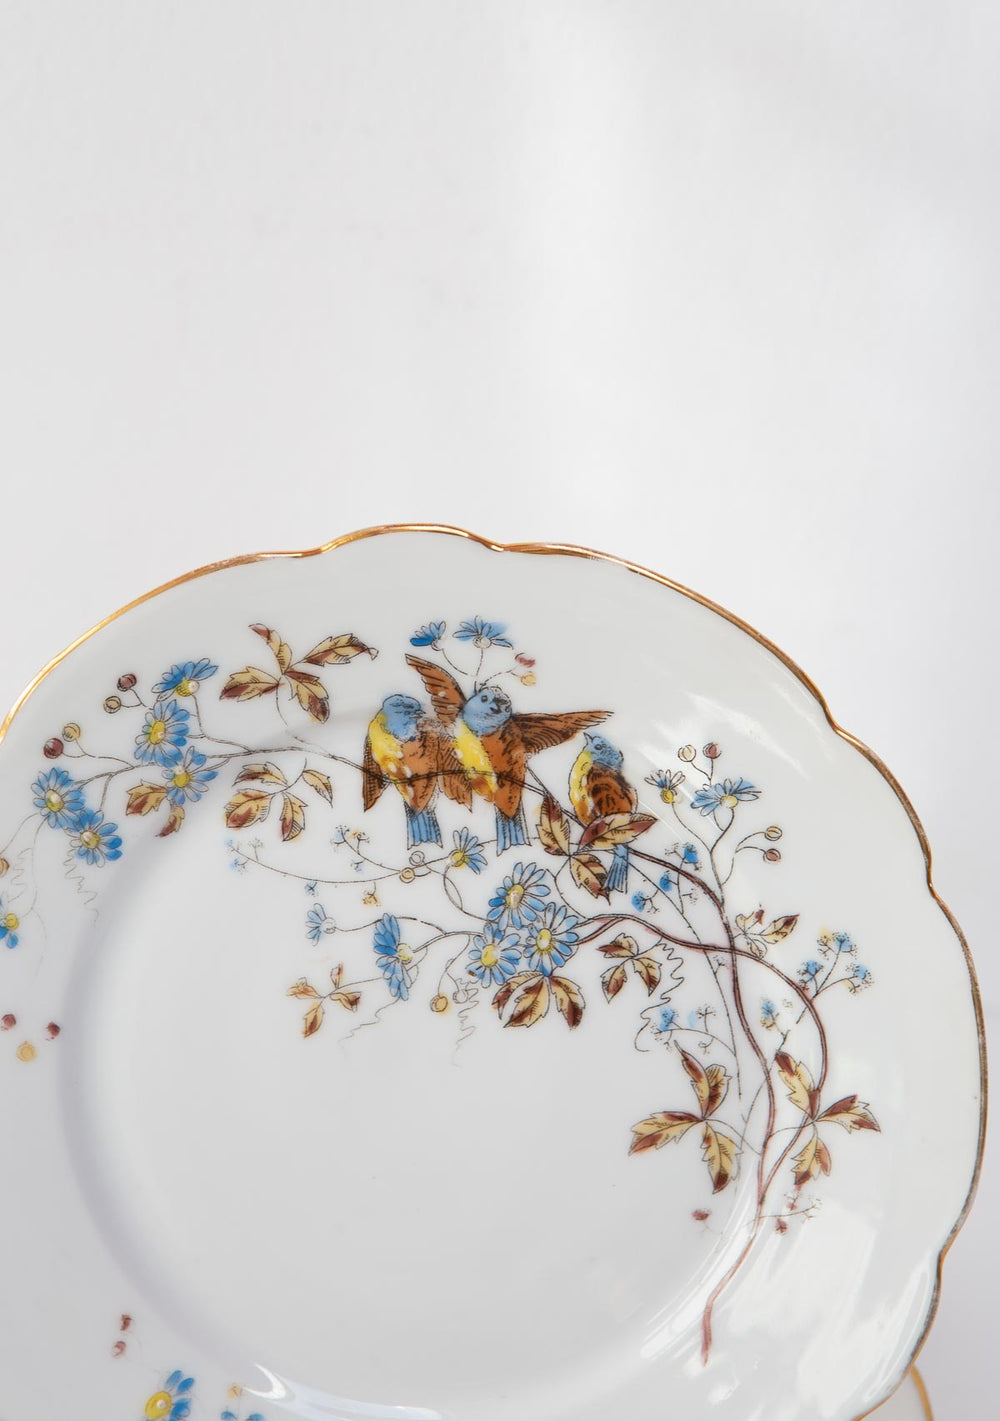 Juego 5 platos postre porcelana Vieux Paris fin s. XIX